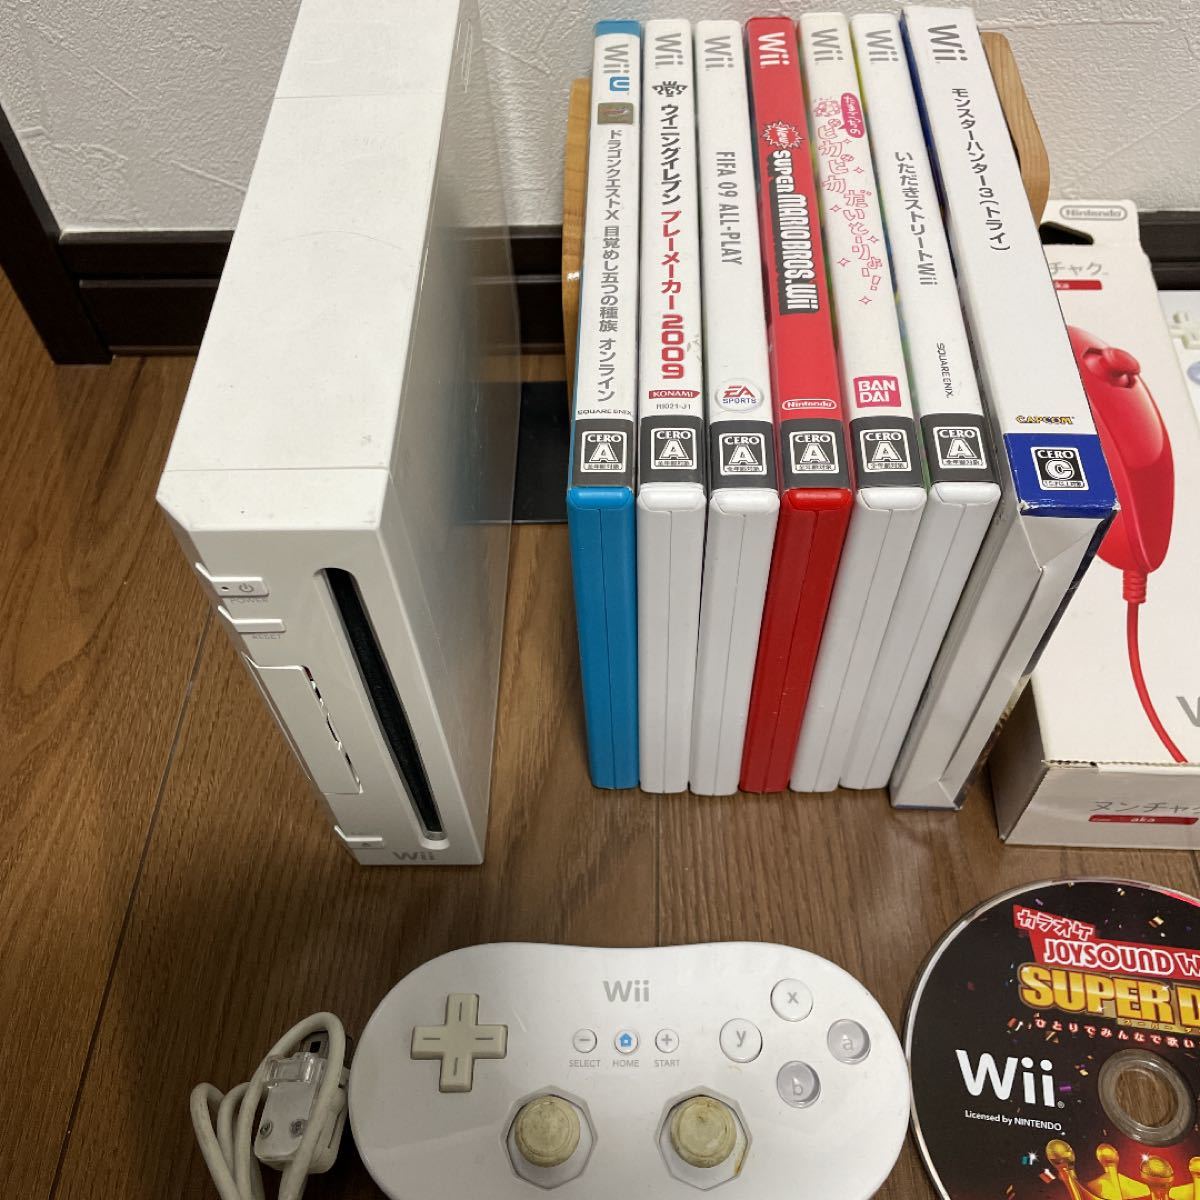 任天堂Wii本体、付属品、ソフトセット